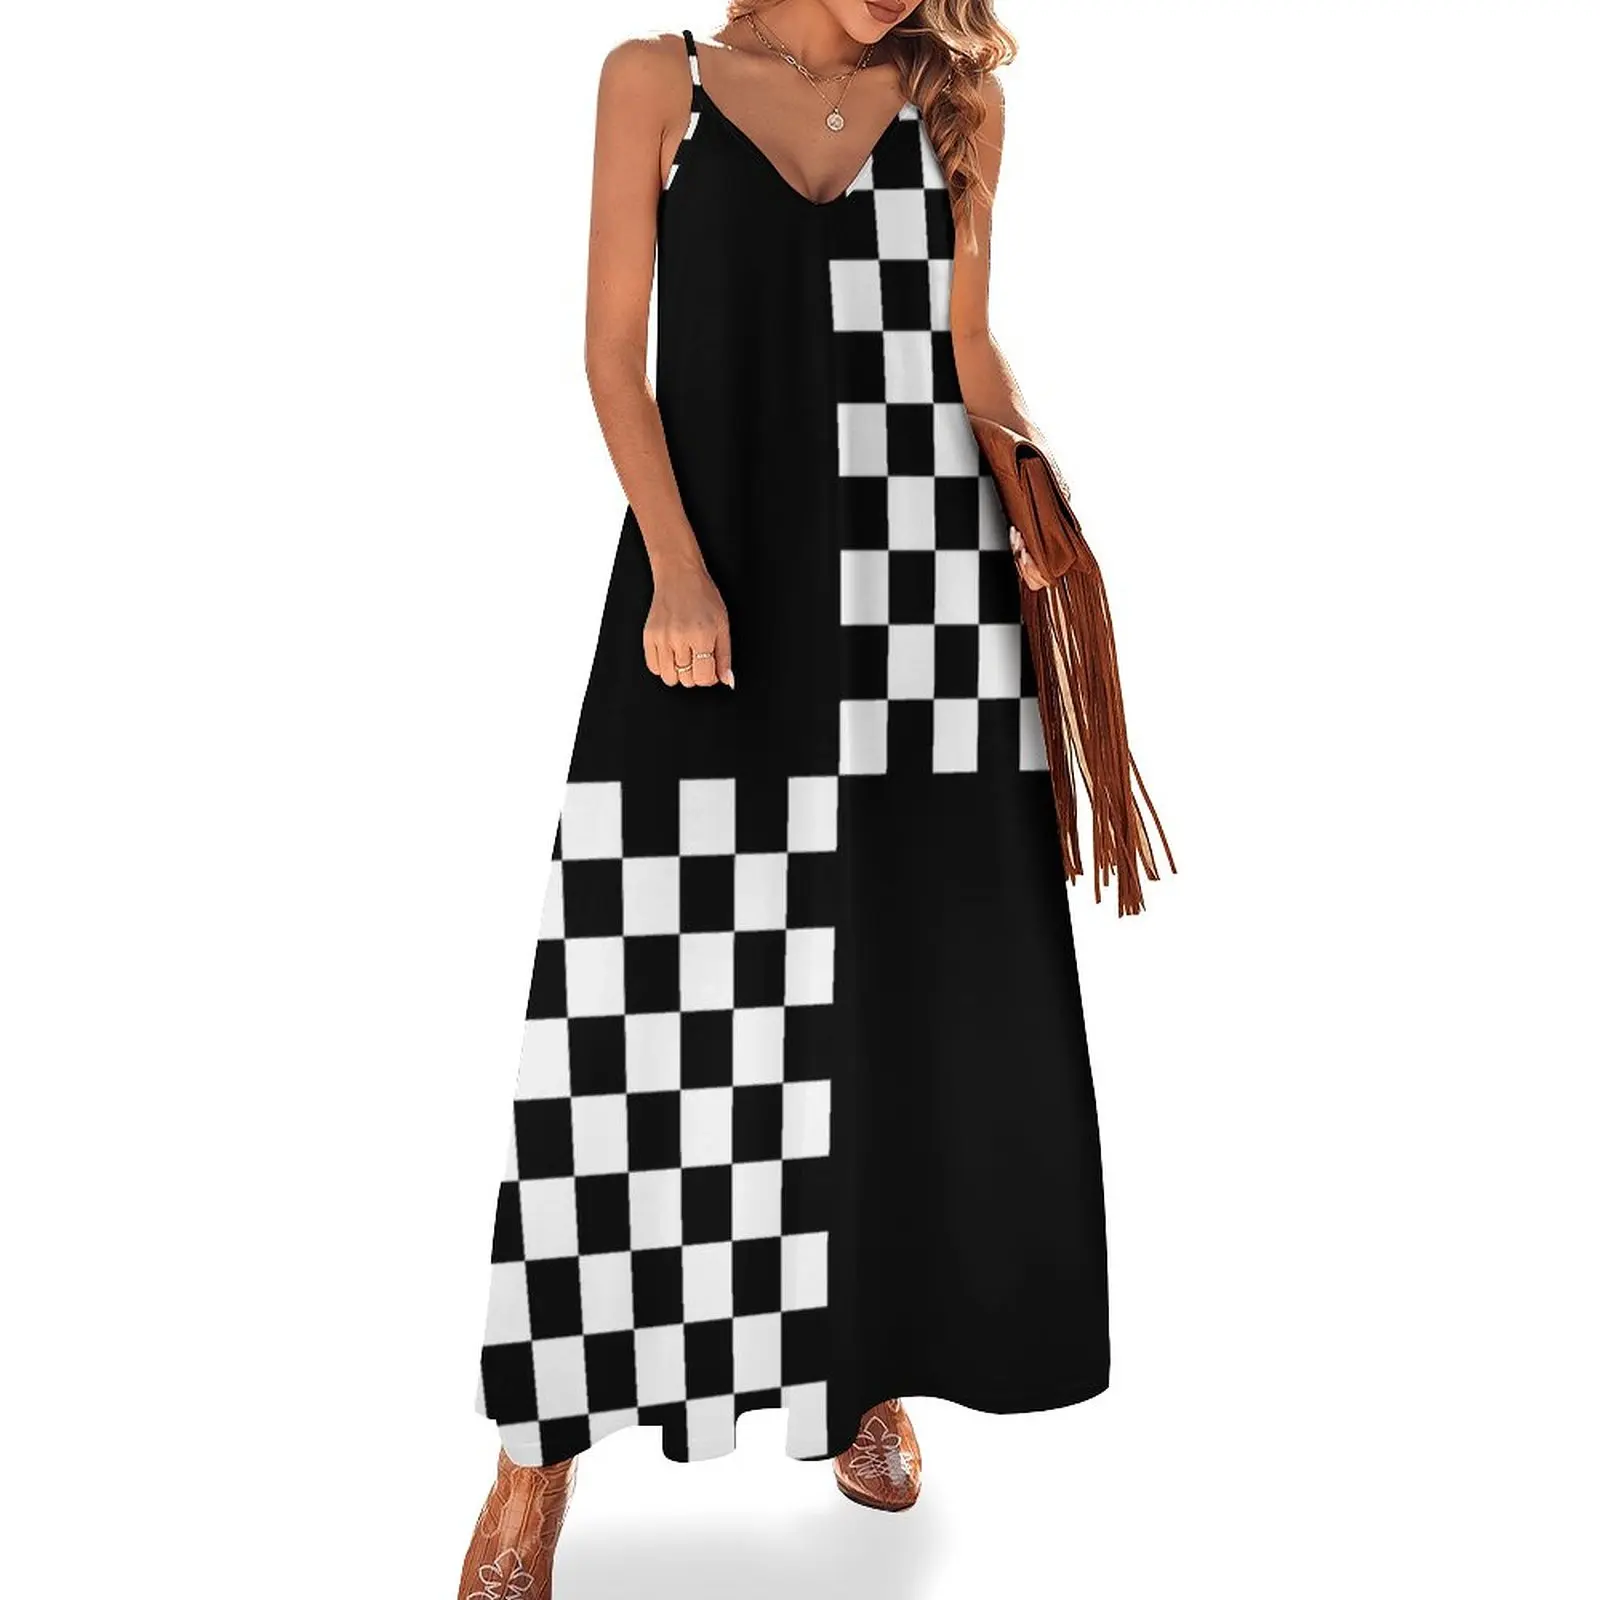 

Quad Ska Black White Checked Pattern Sleeveless Dress dresses for woman birthday dress dress for women summer